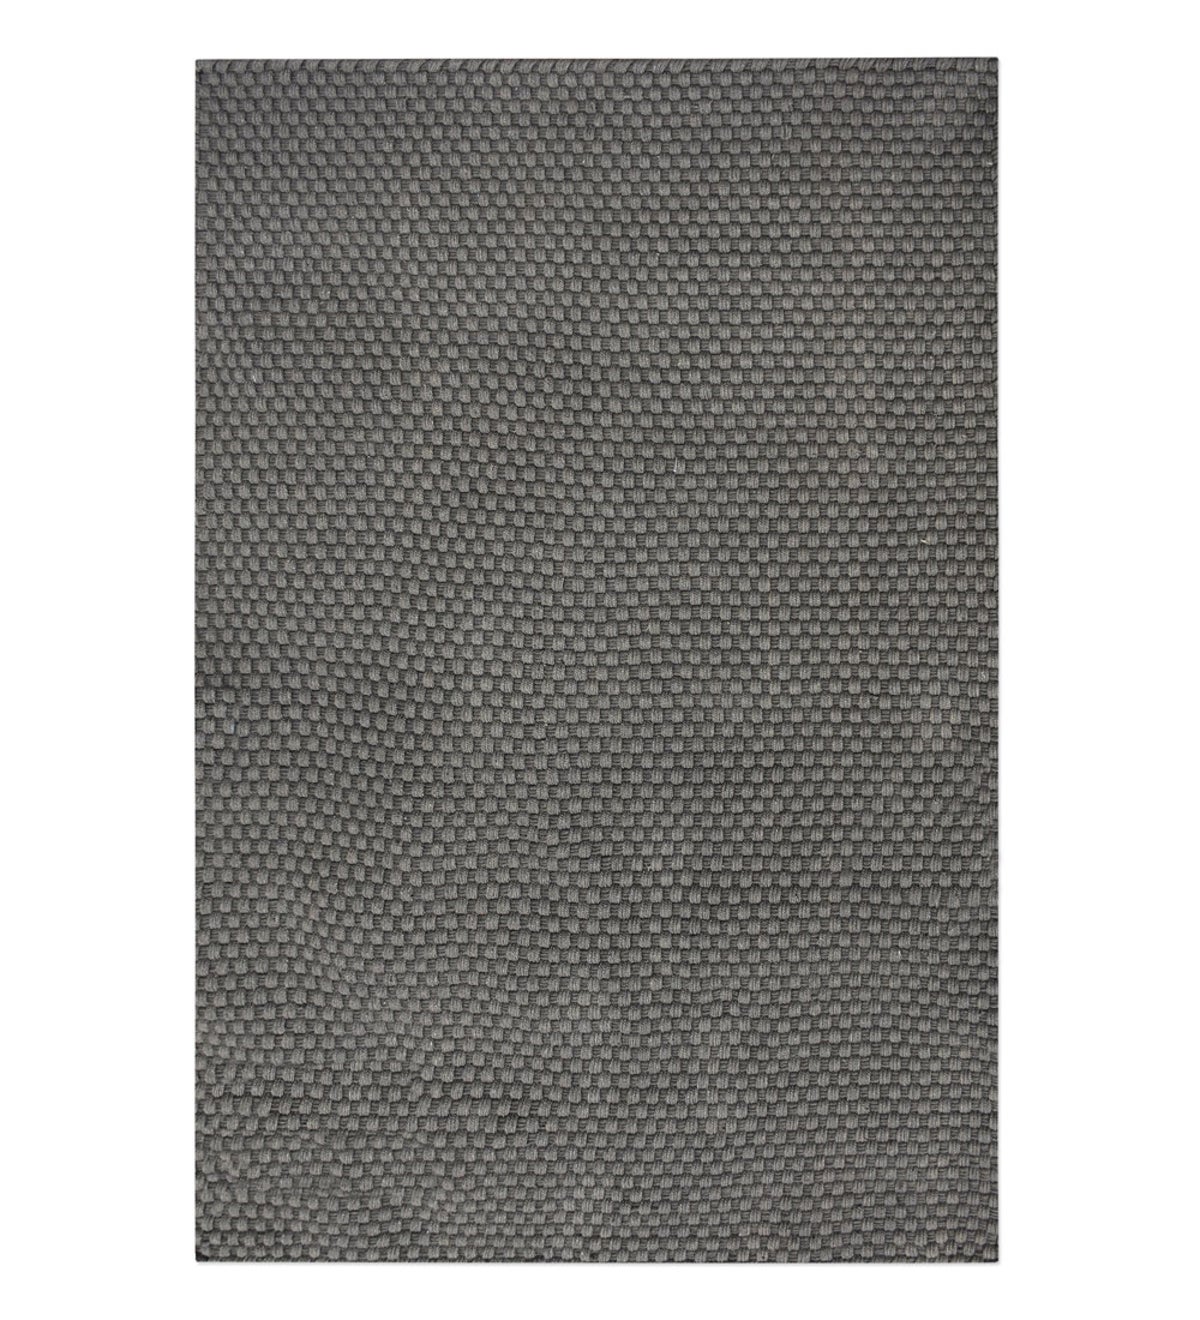 Handwoven Recycled Plastic Indoor/Outdoor Rug - Beige 8x10 - Dark Gray